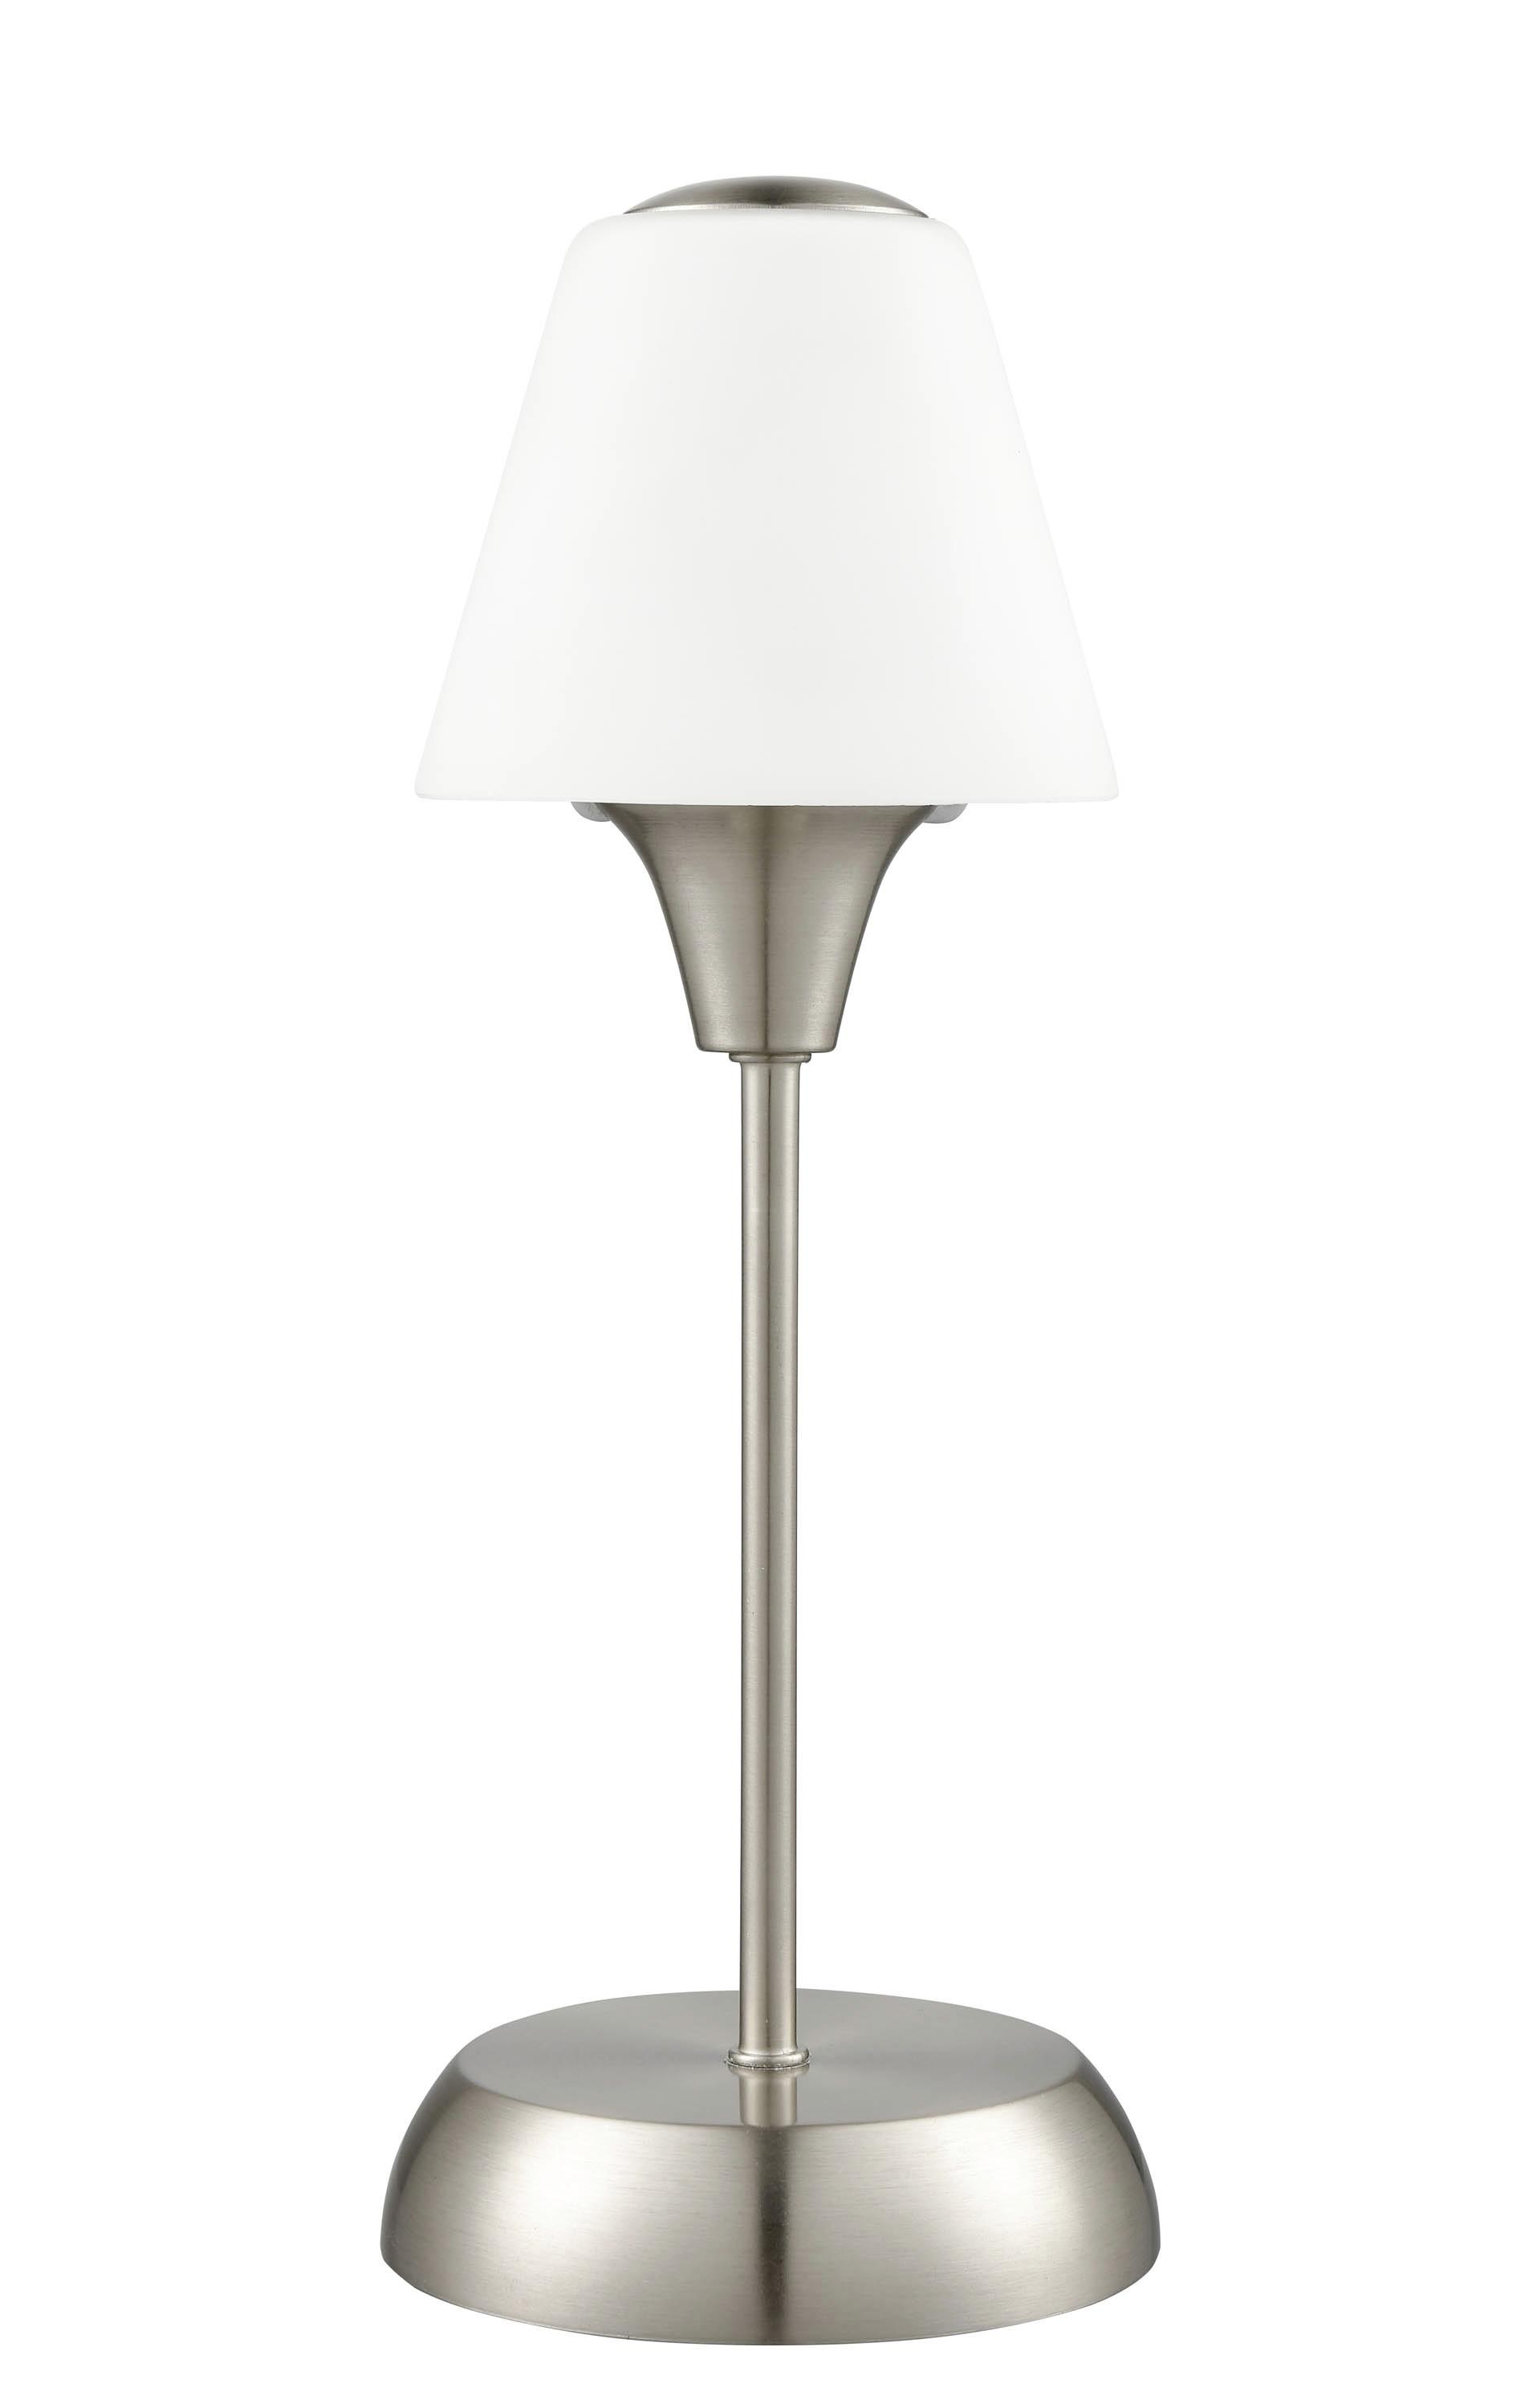 Tischlampe Elena Nickelfarben/ Milchglas mit Touchfunktion - Weiß/Nickelfarben, ROMANTIK / LANDHAUS, Glas/Metall (13/34cm) - James Wood